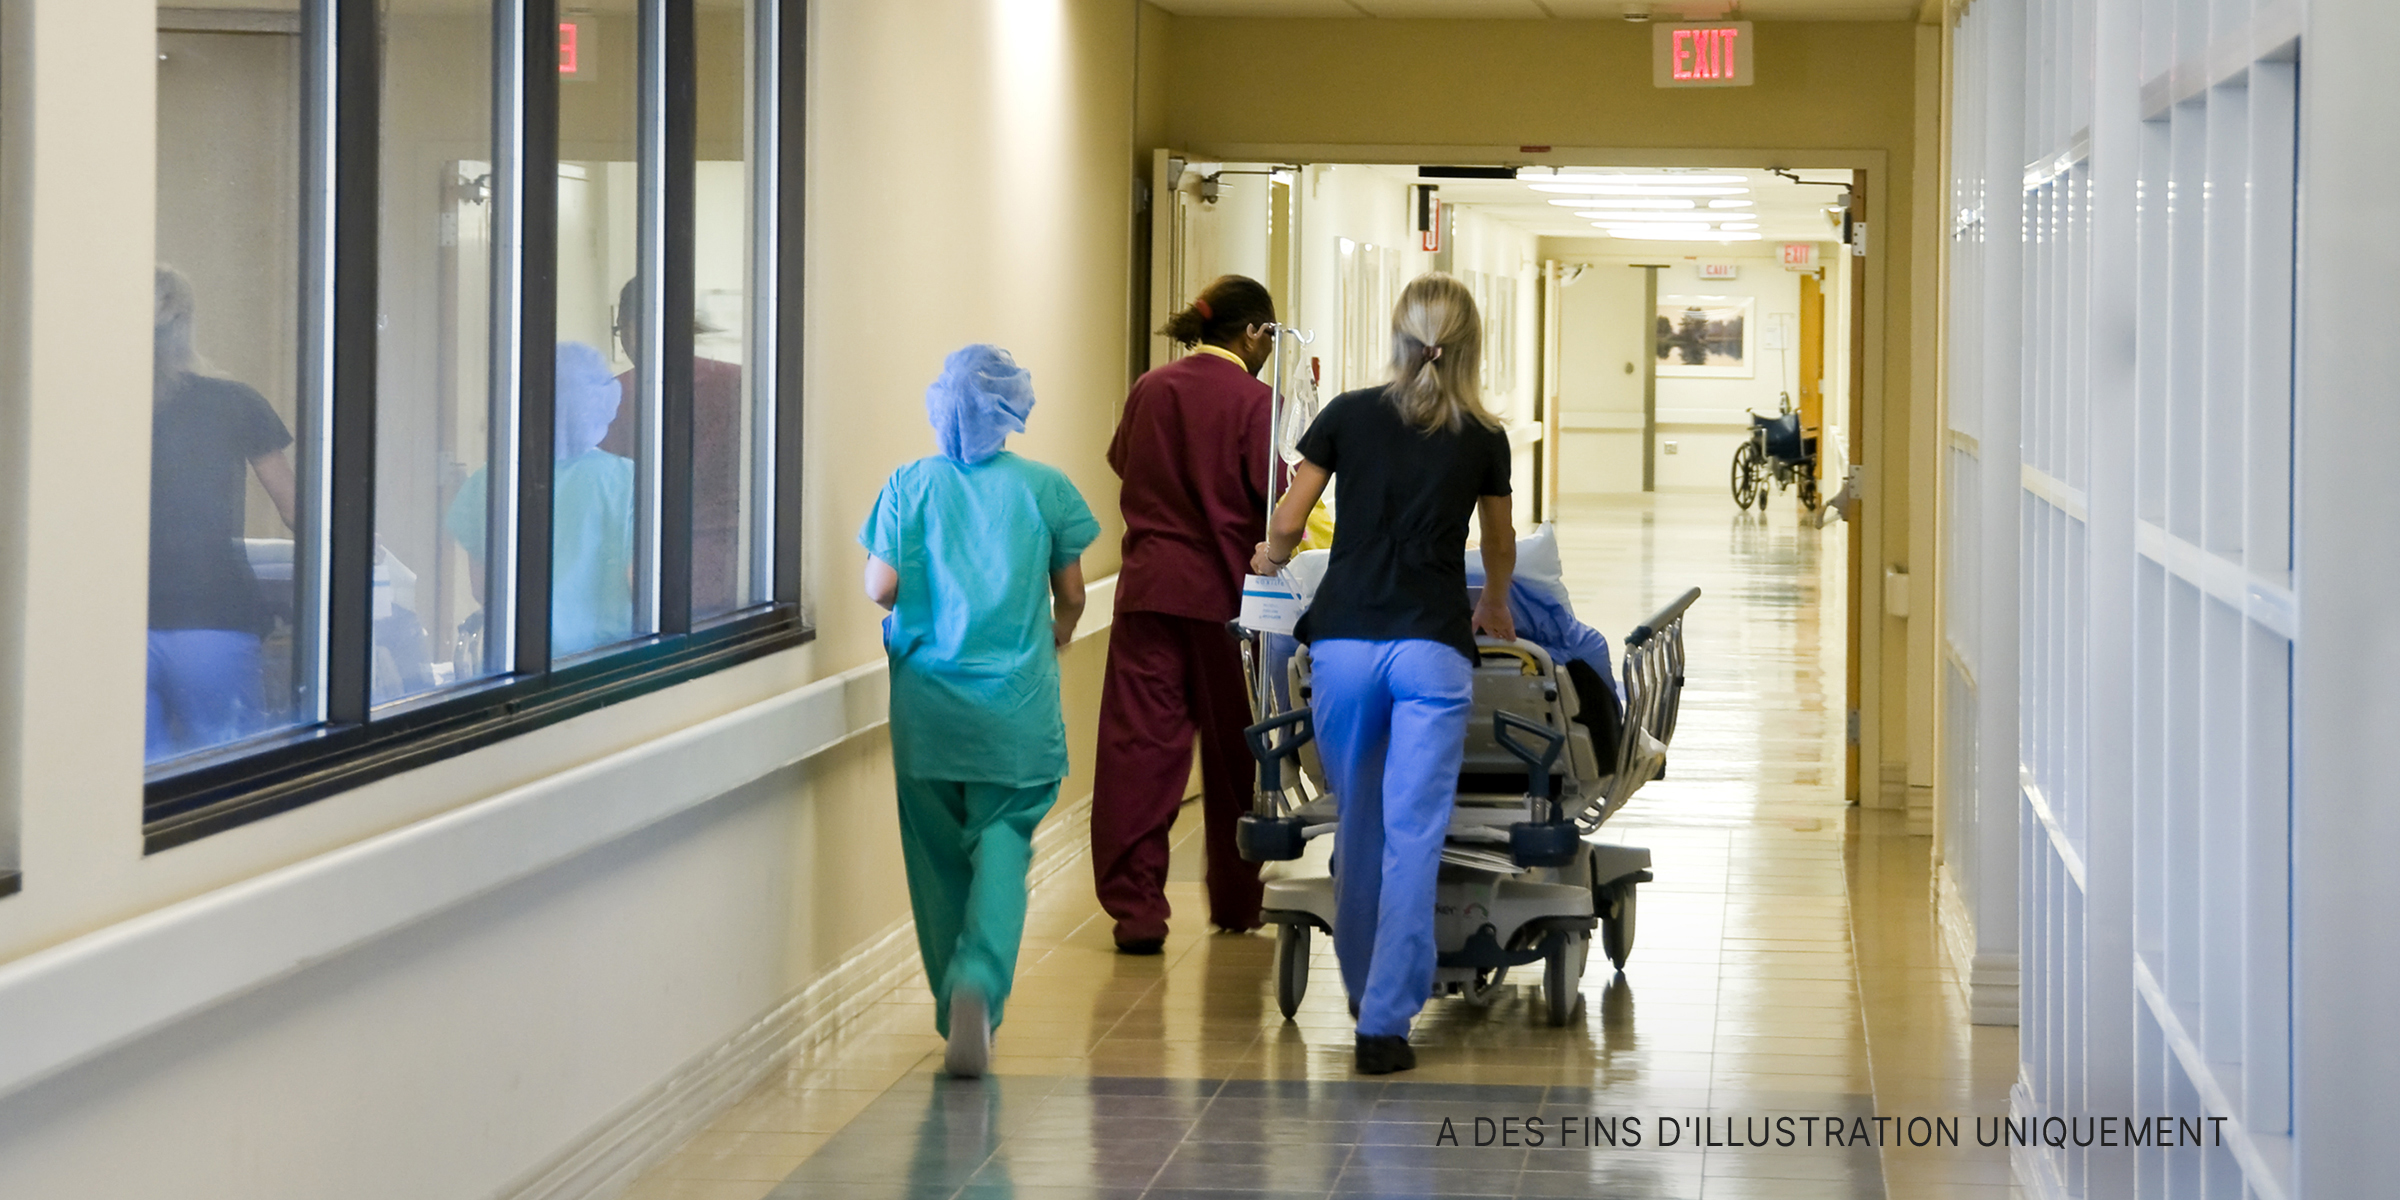 Du personnel hospitalier emmenant un patient dans le service. | Source : Shutterstock